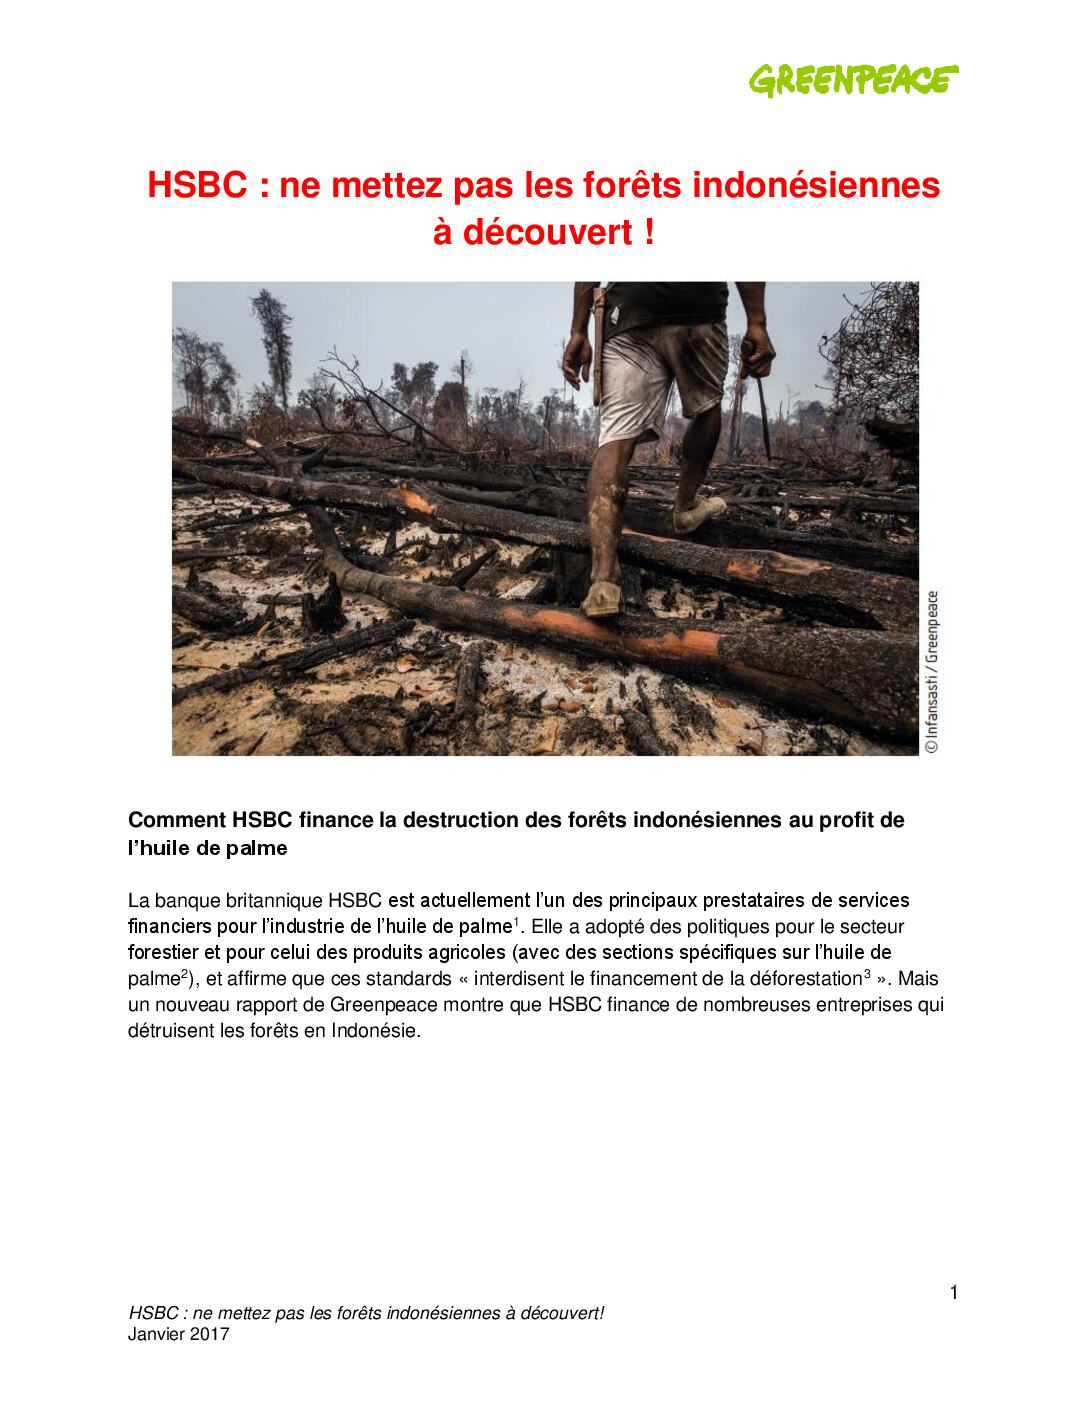 HSBC : ne mettez pas les forêts indonésiennes à découvert !